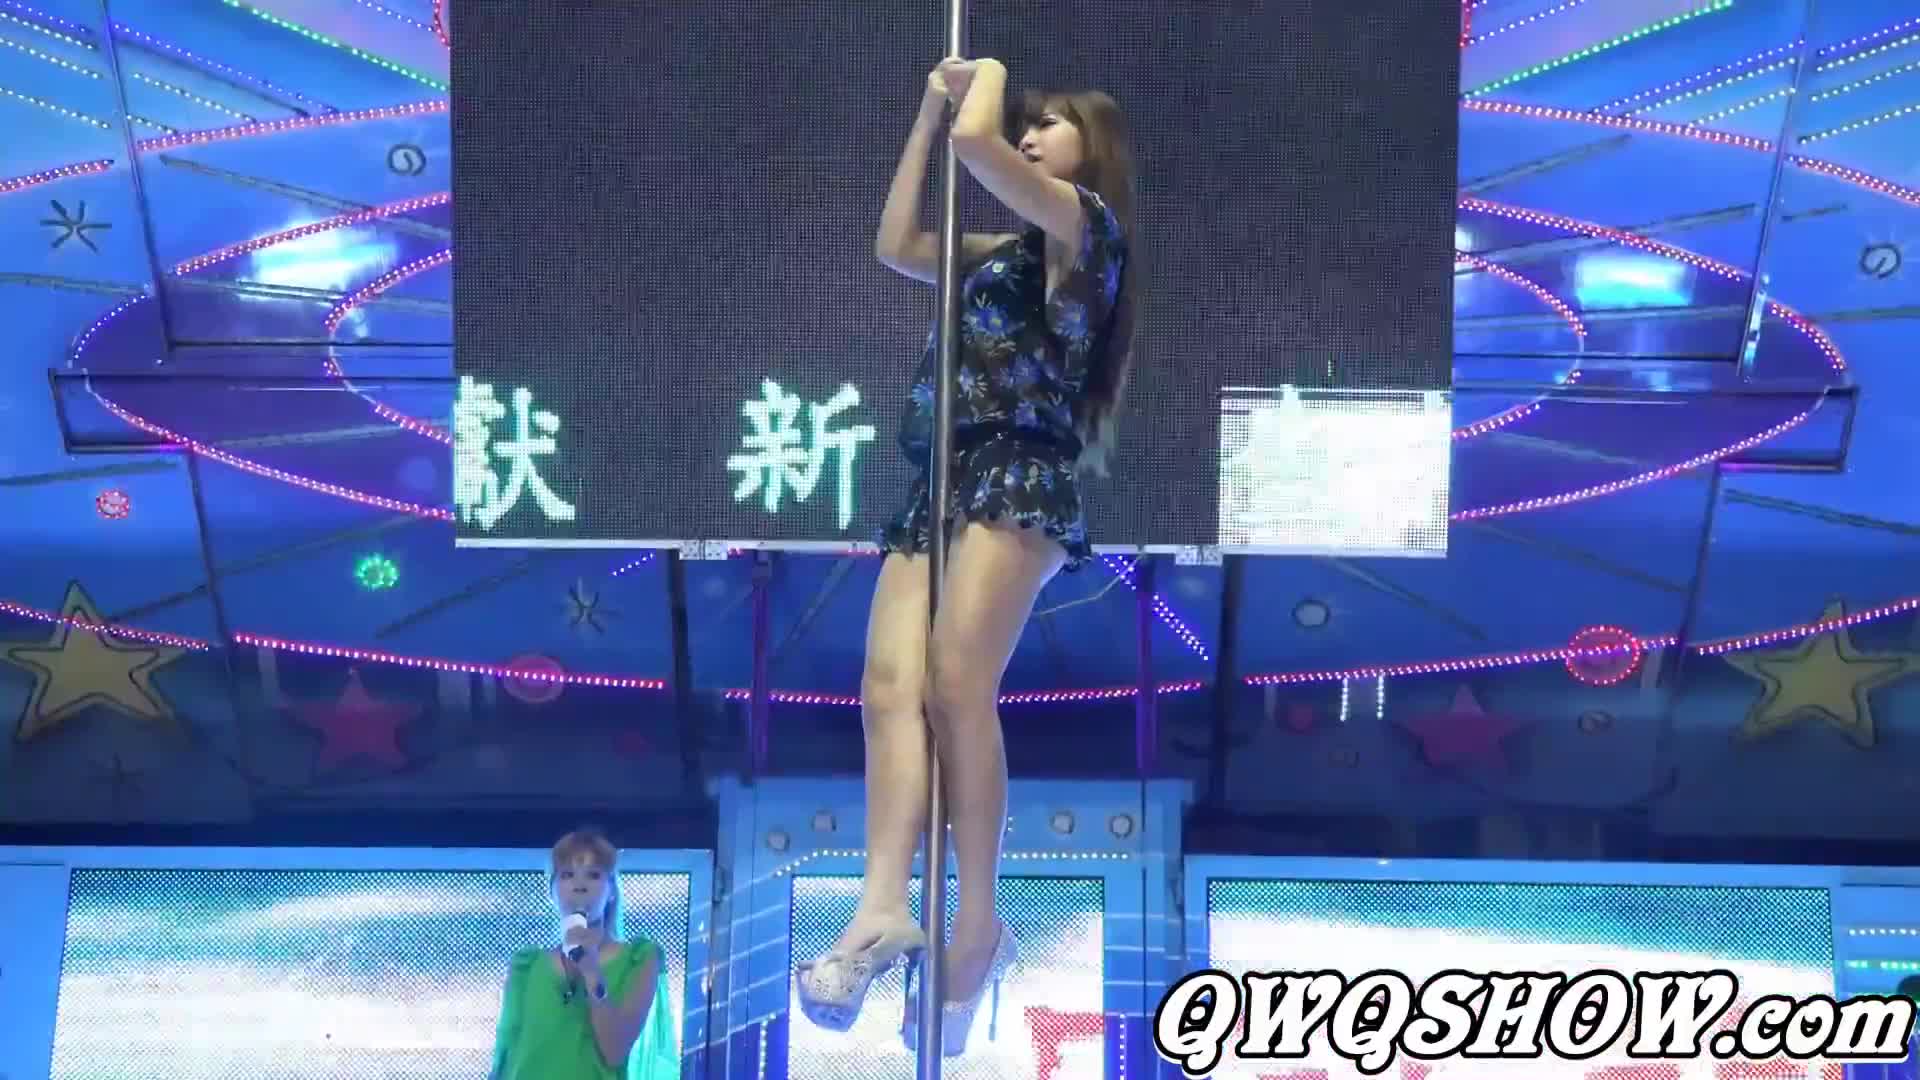 中元普渡辣妹鋼管秀(347) & Pole dance show & セクシーダンス & เต้นเซ็กซี่ & 섹시댄